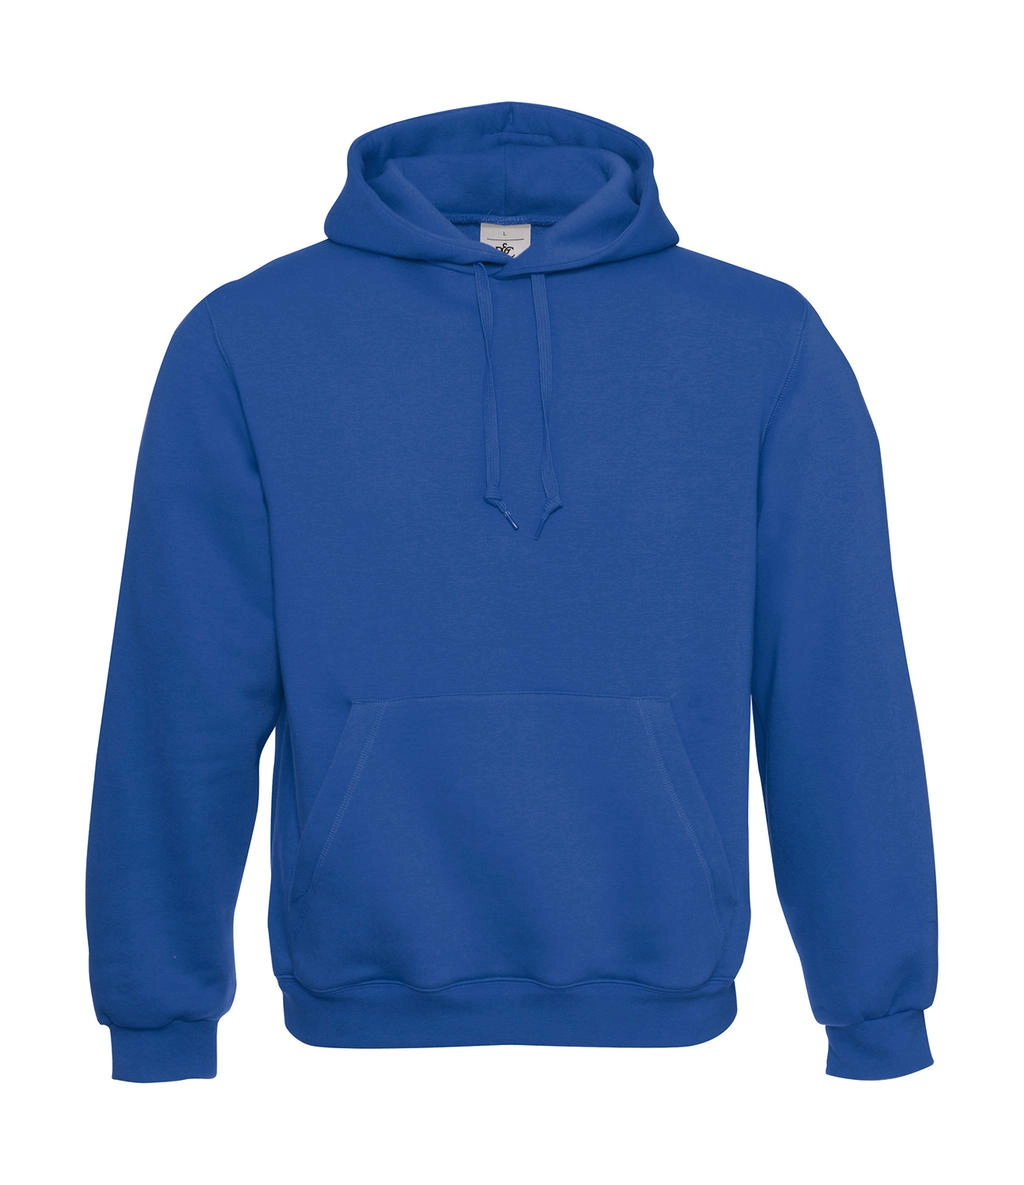 Hooded Sweatshirt zum Besticken und Bedrucken in der Farbe Royal mit Ihren Logo, Schriftzug oder Motiv.